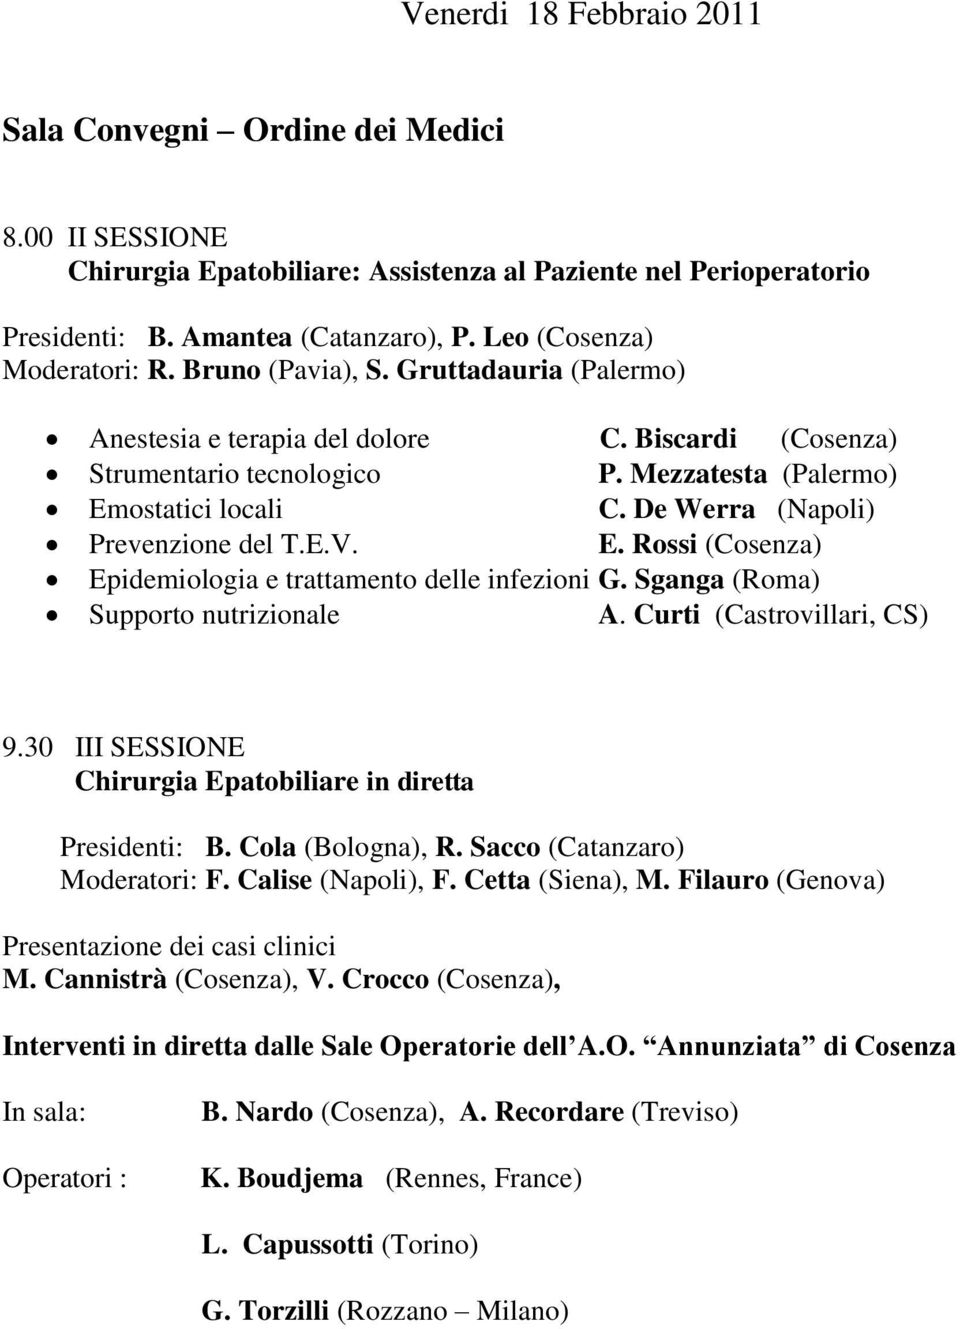 De Werra (Napoli) Prevenzione del T.E.V. E. Rossi (Cosenza) Epidemiologia e trattamento delle infezioni G. Sganga (Roma) Supporto nutrizionale A. Curti (Castrovillari, CS) 9.